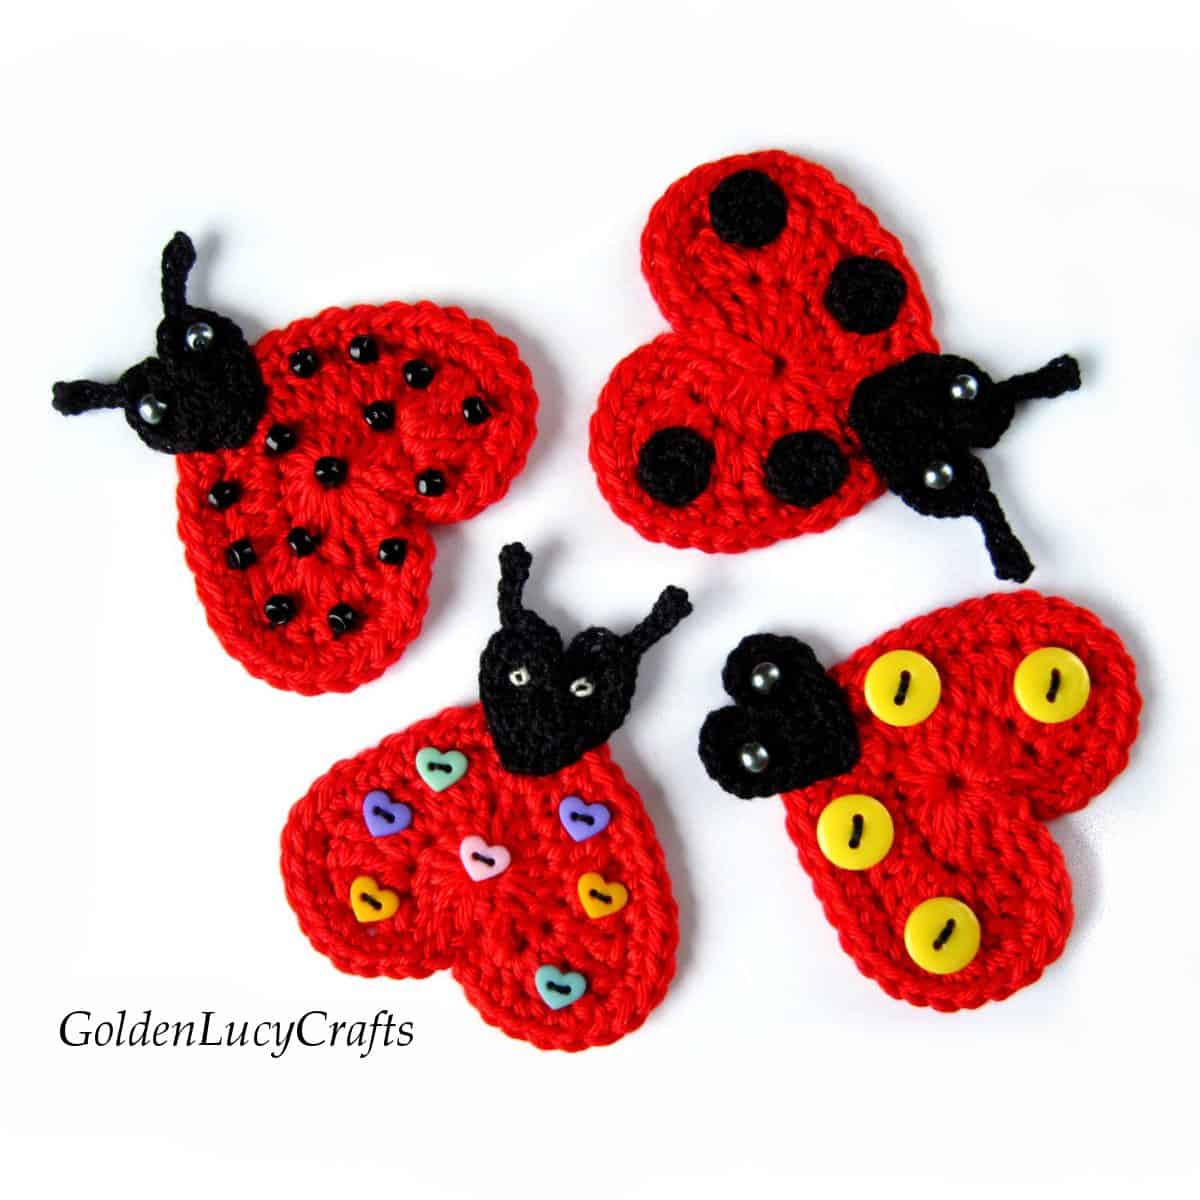 Four crochet ladybug appliques.